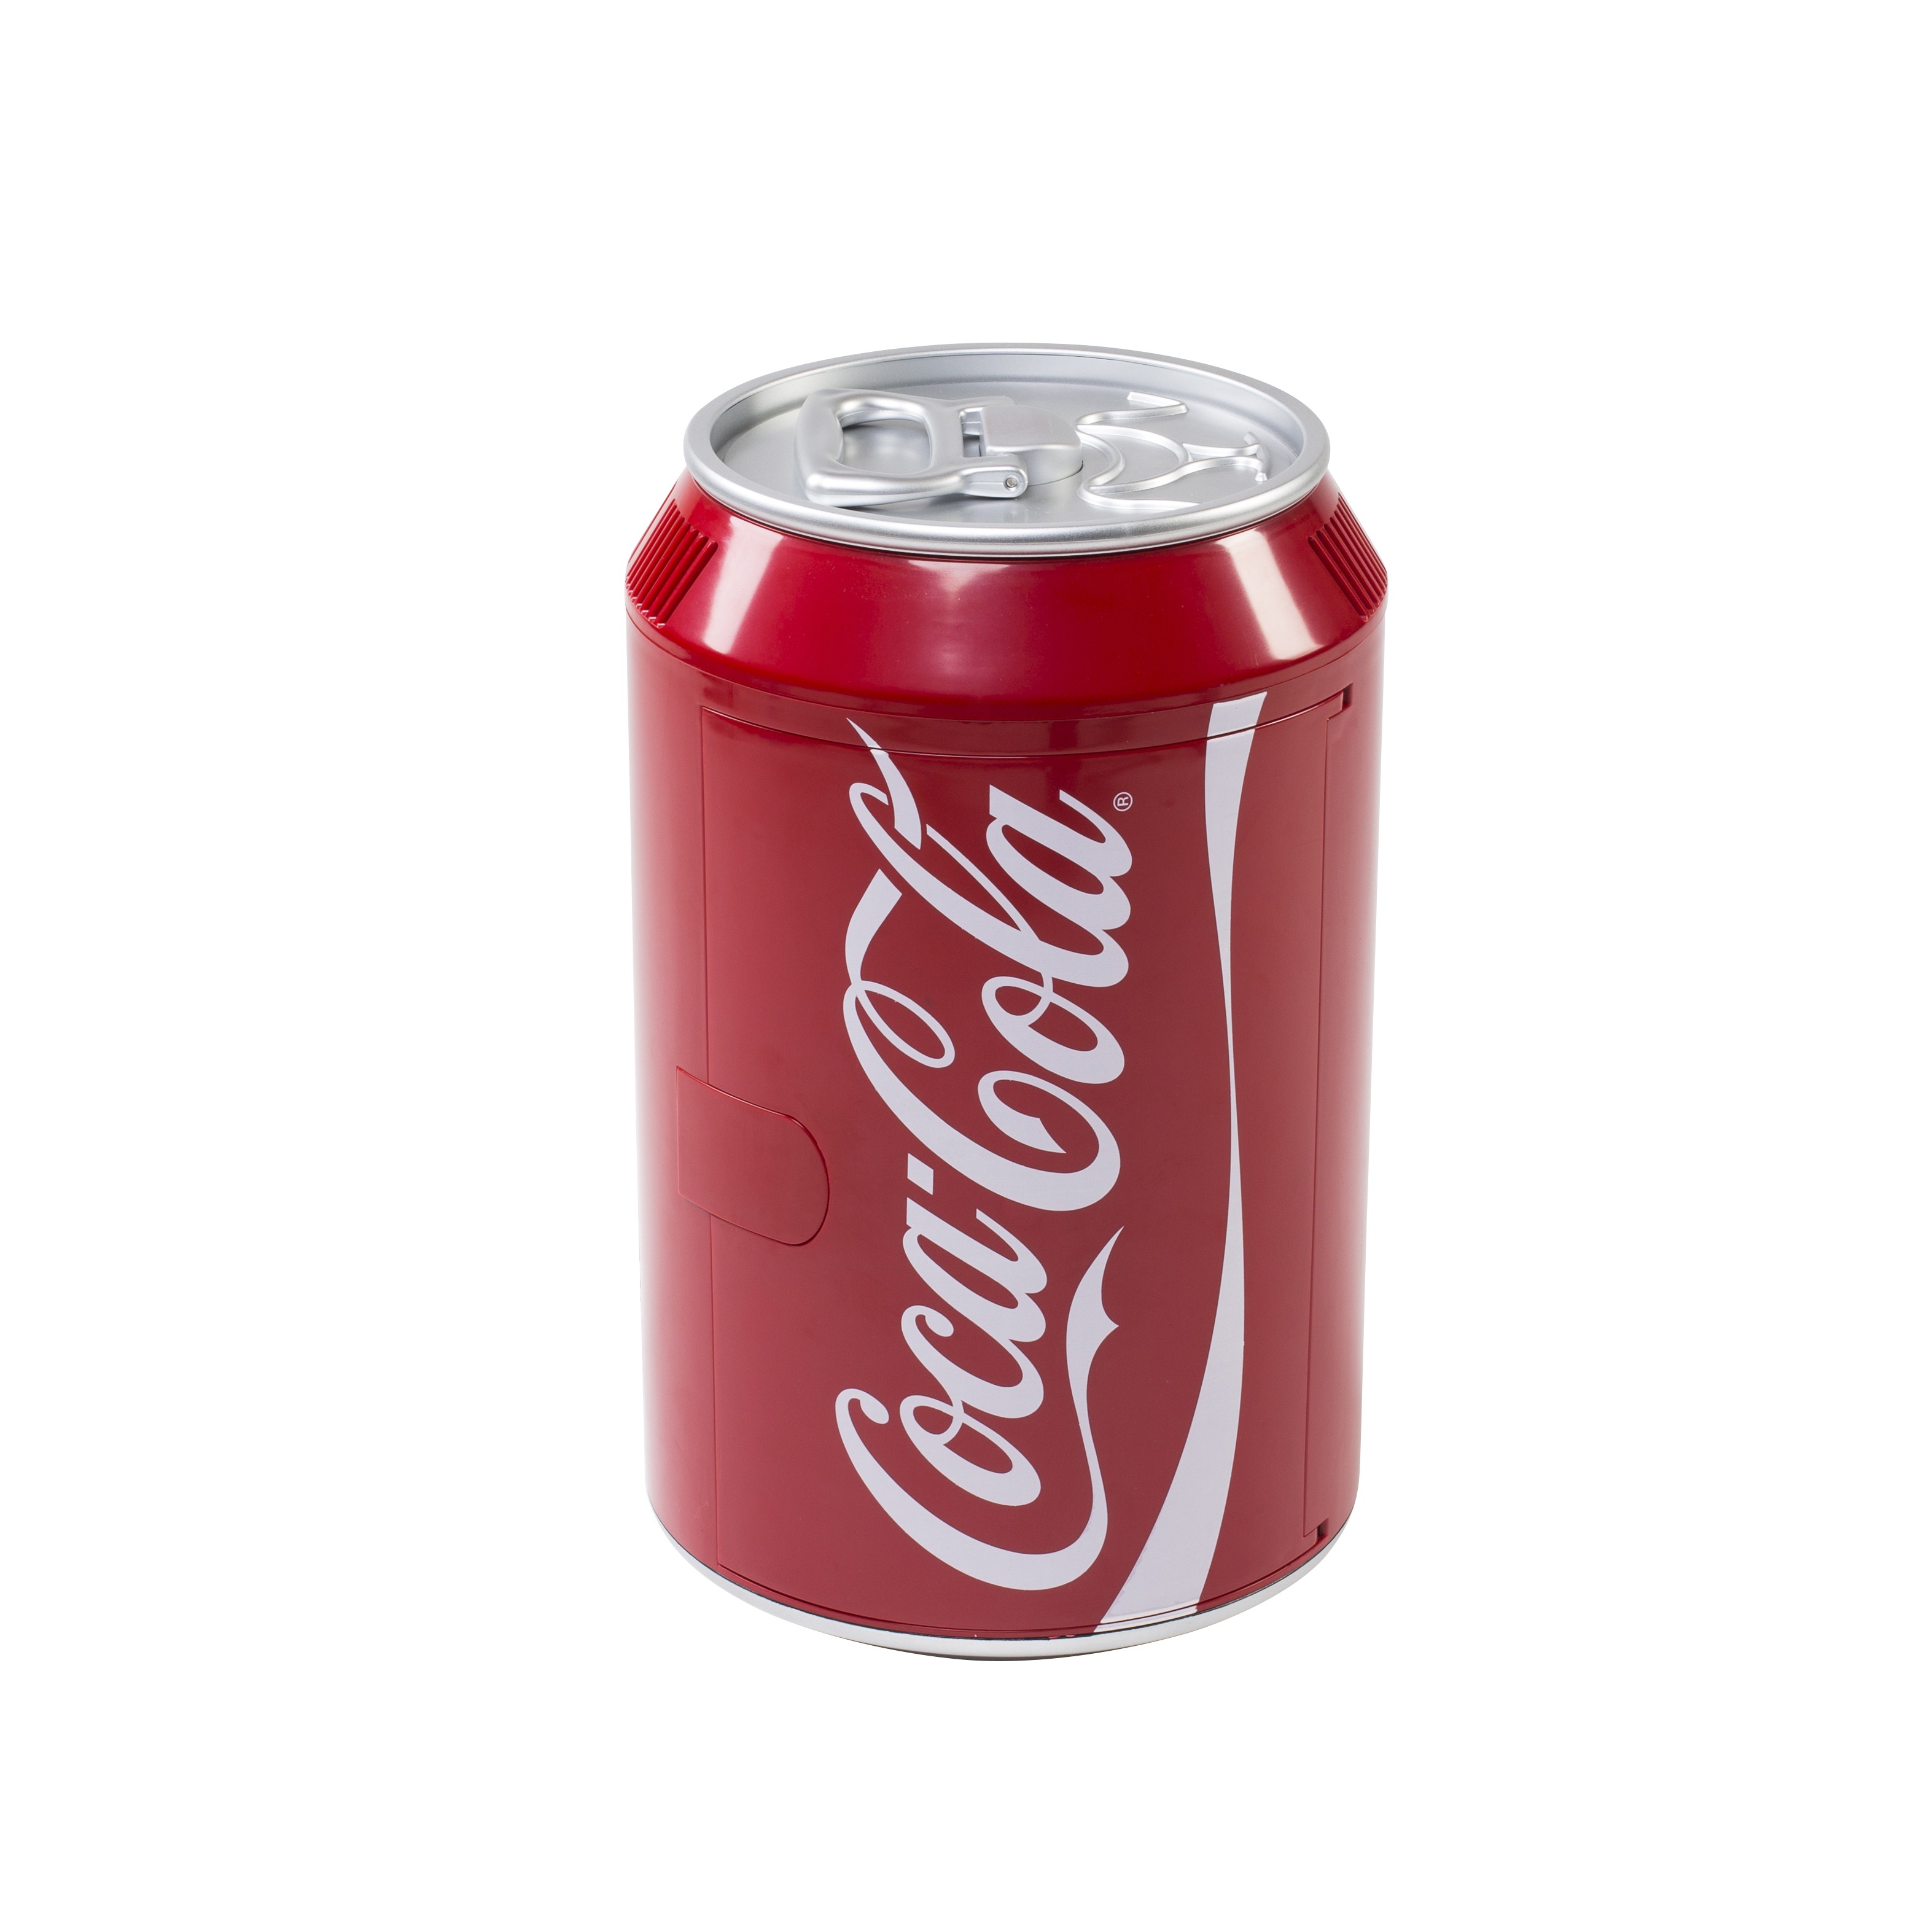 9600003942 Mobicool CoolCan 10 Coca-Cola Mini Kühlschrank 9,5l 12/230V -  Alle Artikel